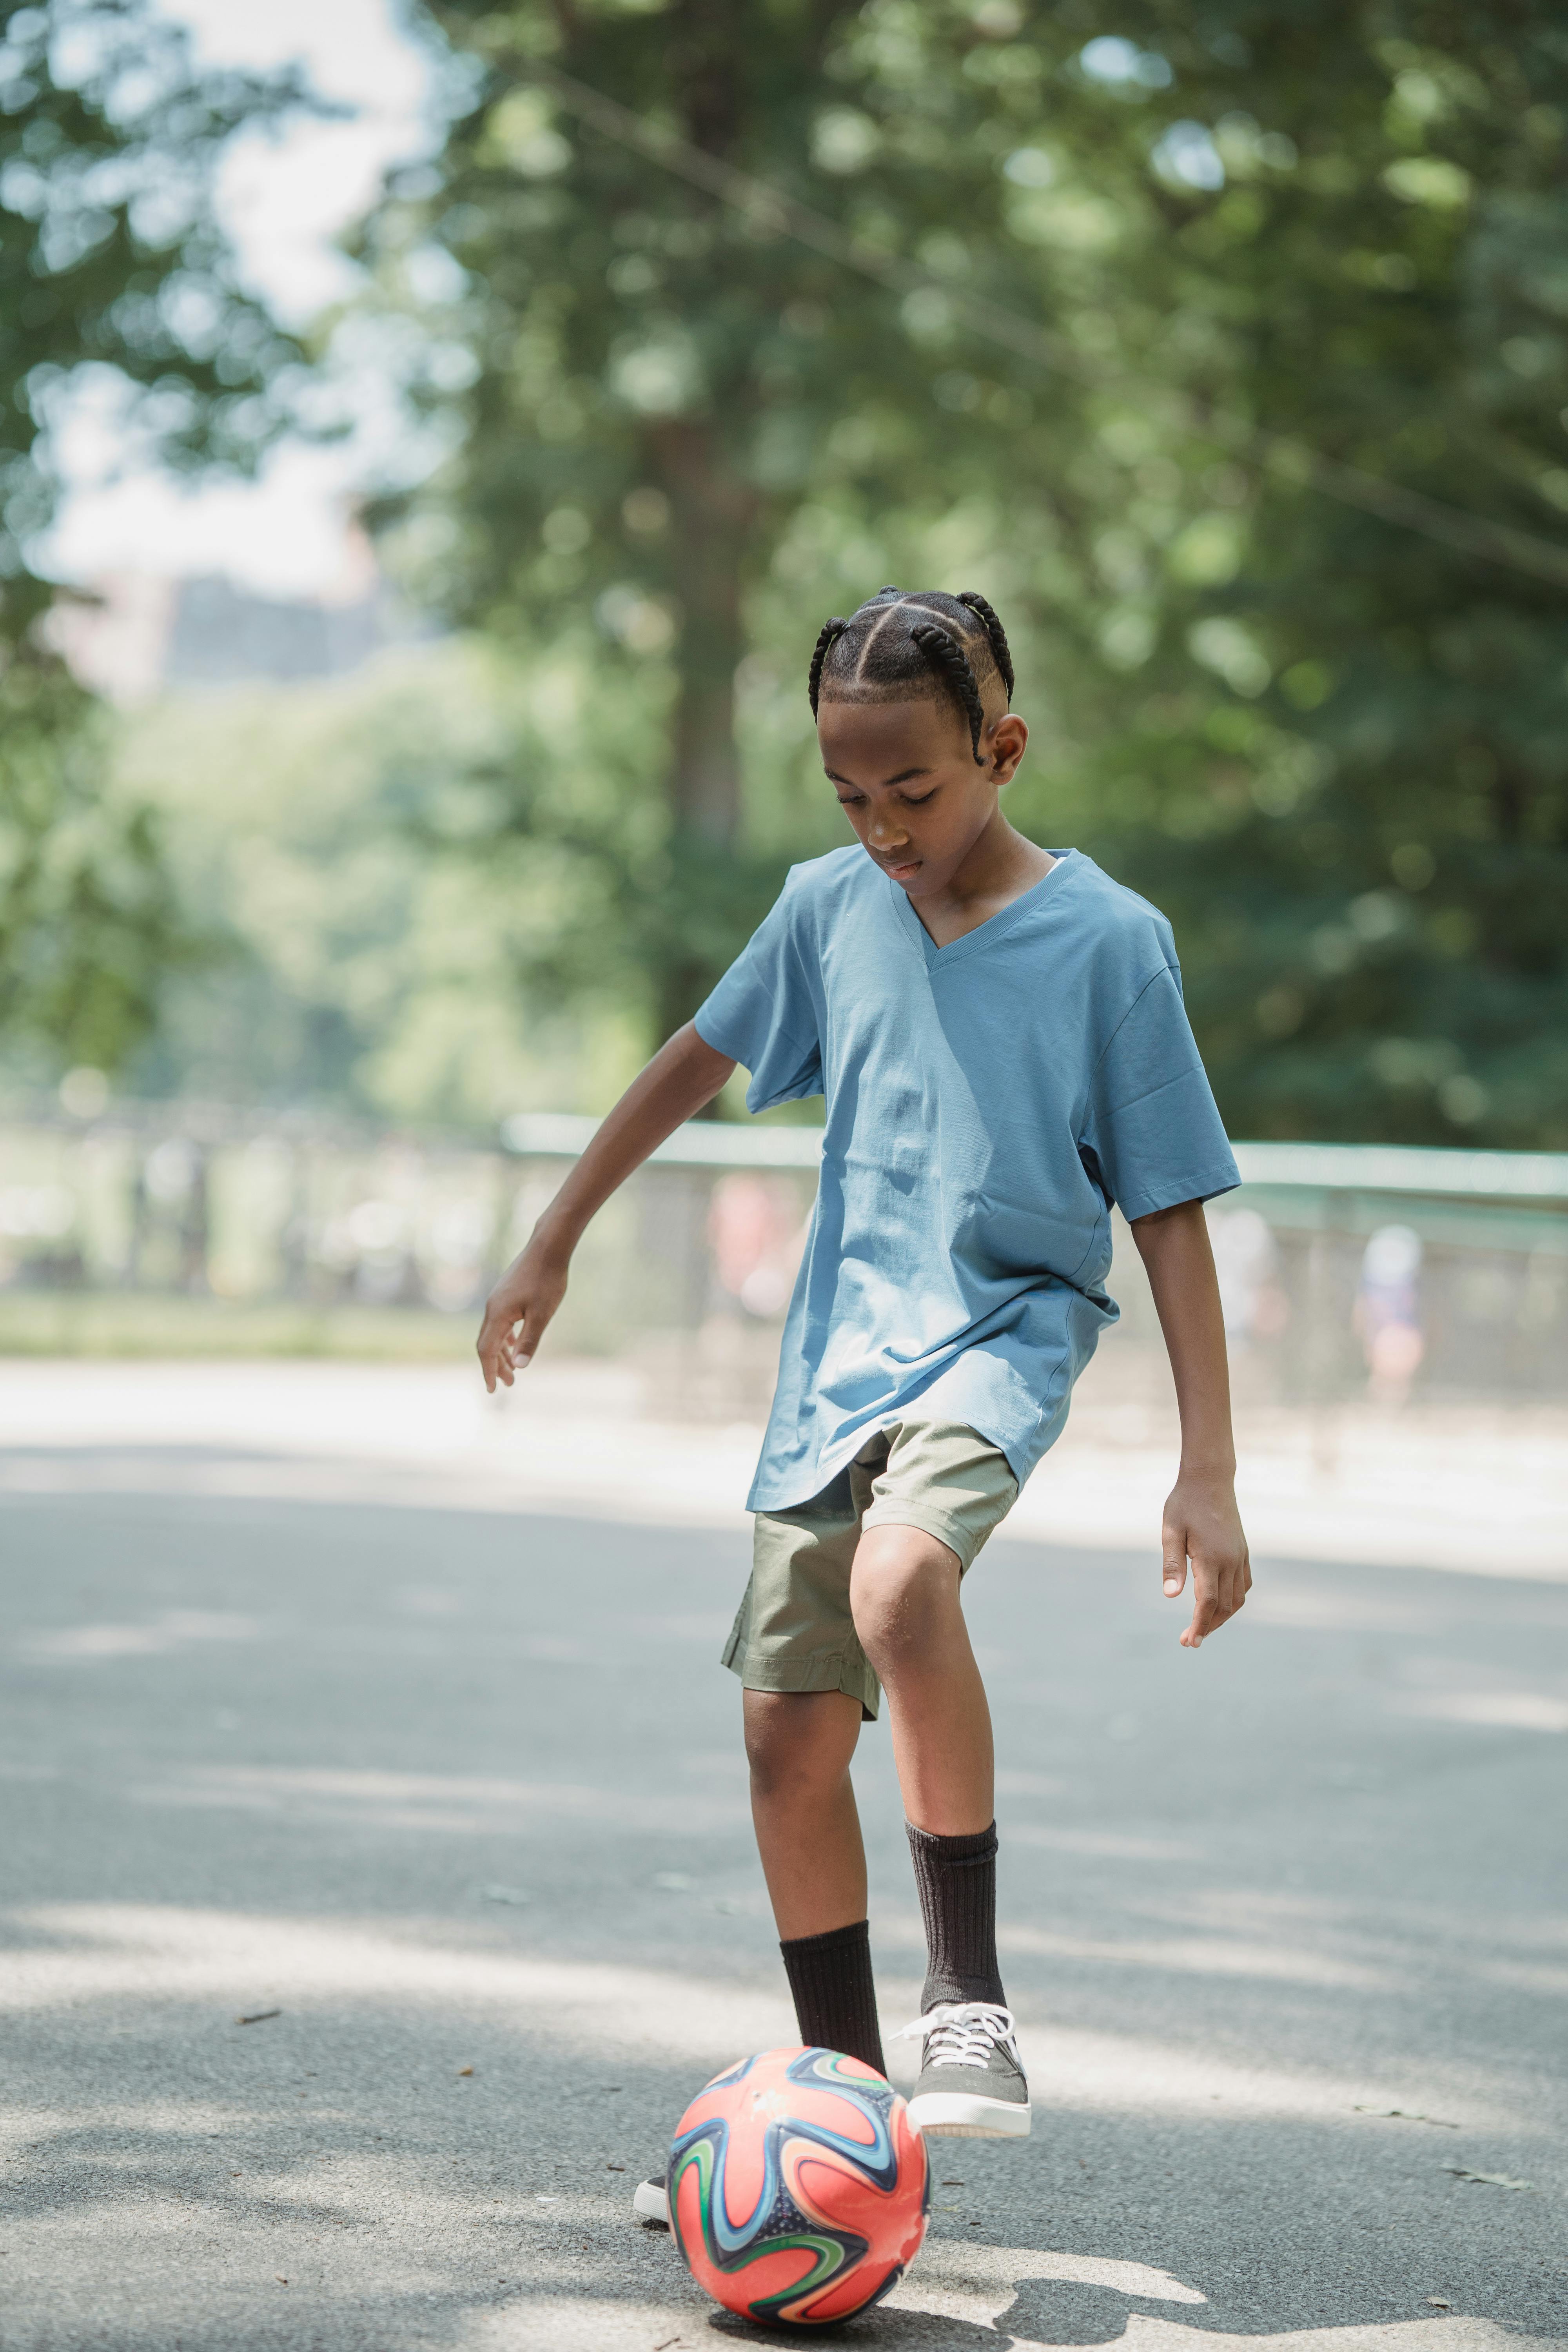 boy kicking a football on asphalt